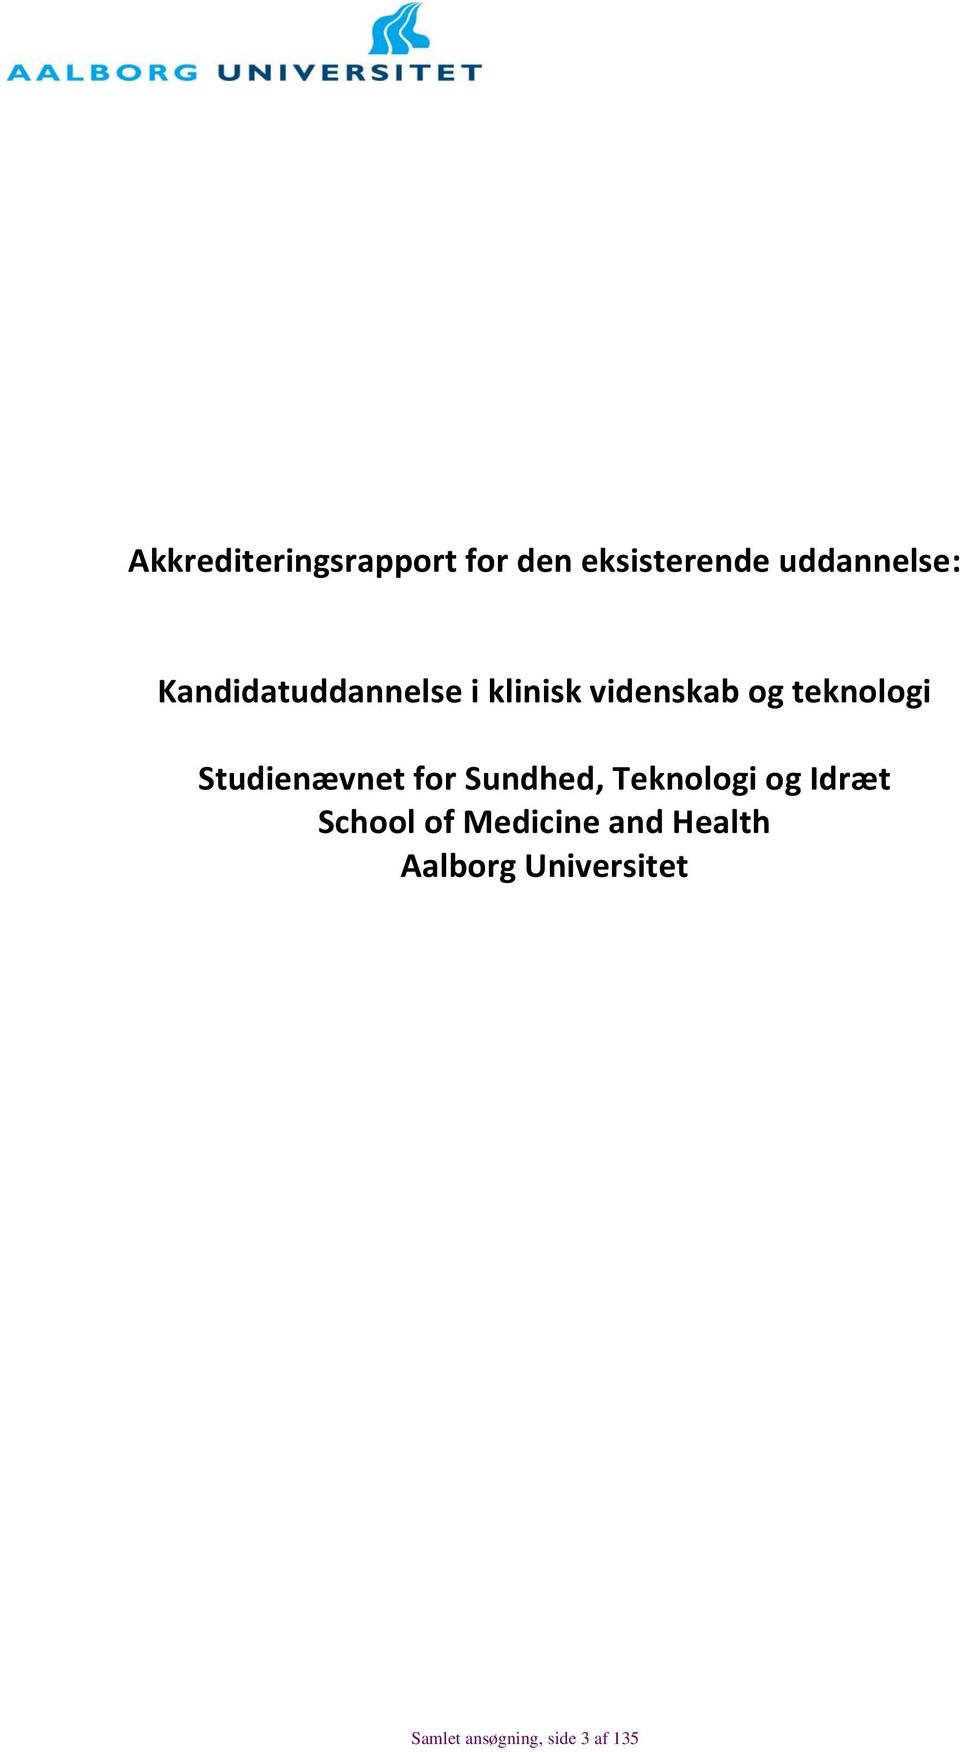 Studienævnet for Sundhed, Teknologi og Idræt School of